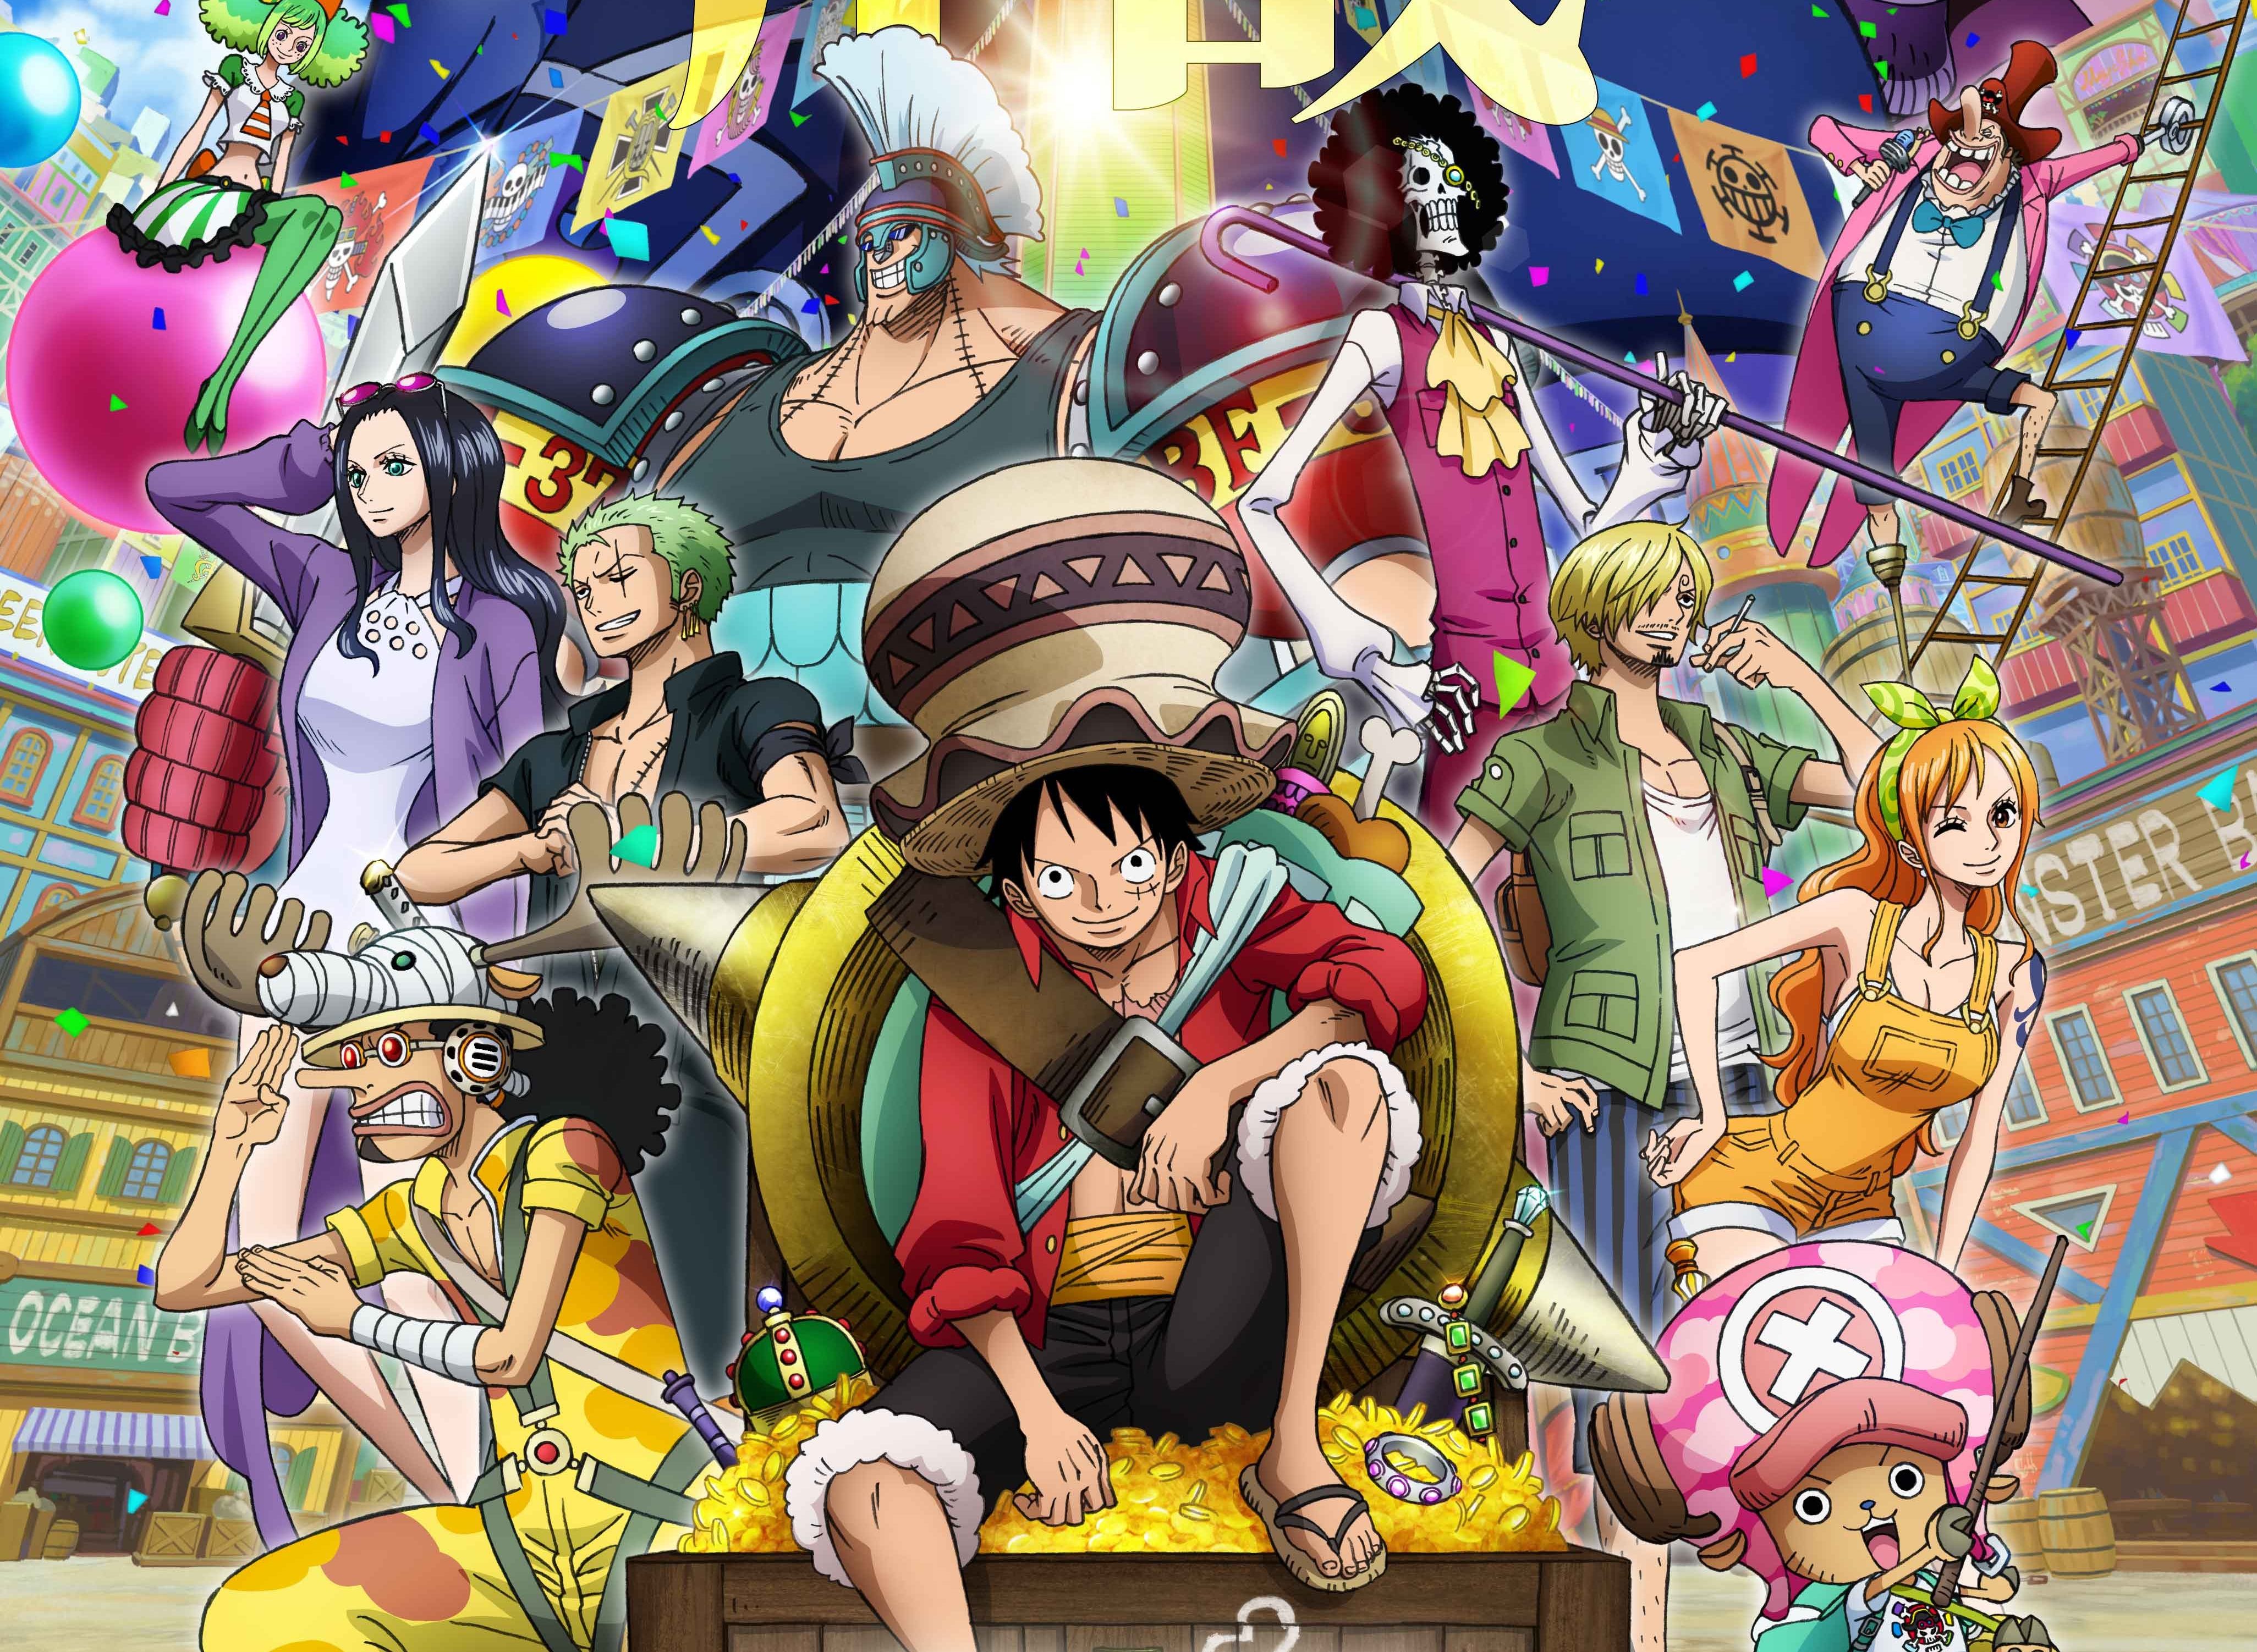 Nhân vật được yêu thích trong One Piece: Bạn đã bao giờ tò mò về những nhân vật được yêu thích nhất trong One Piece? Bộ sưu tập hình ảnh này sẽ giúp bạn khơi nguồn niềm đam mê với đám hải tặc Mũ Rơm và đưa bạn đến gần hơn với các nhân vật mà bạn yêu thích.